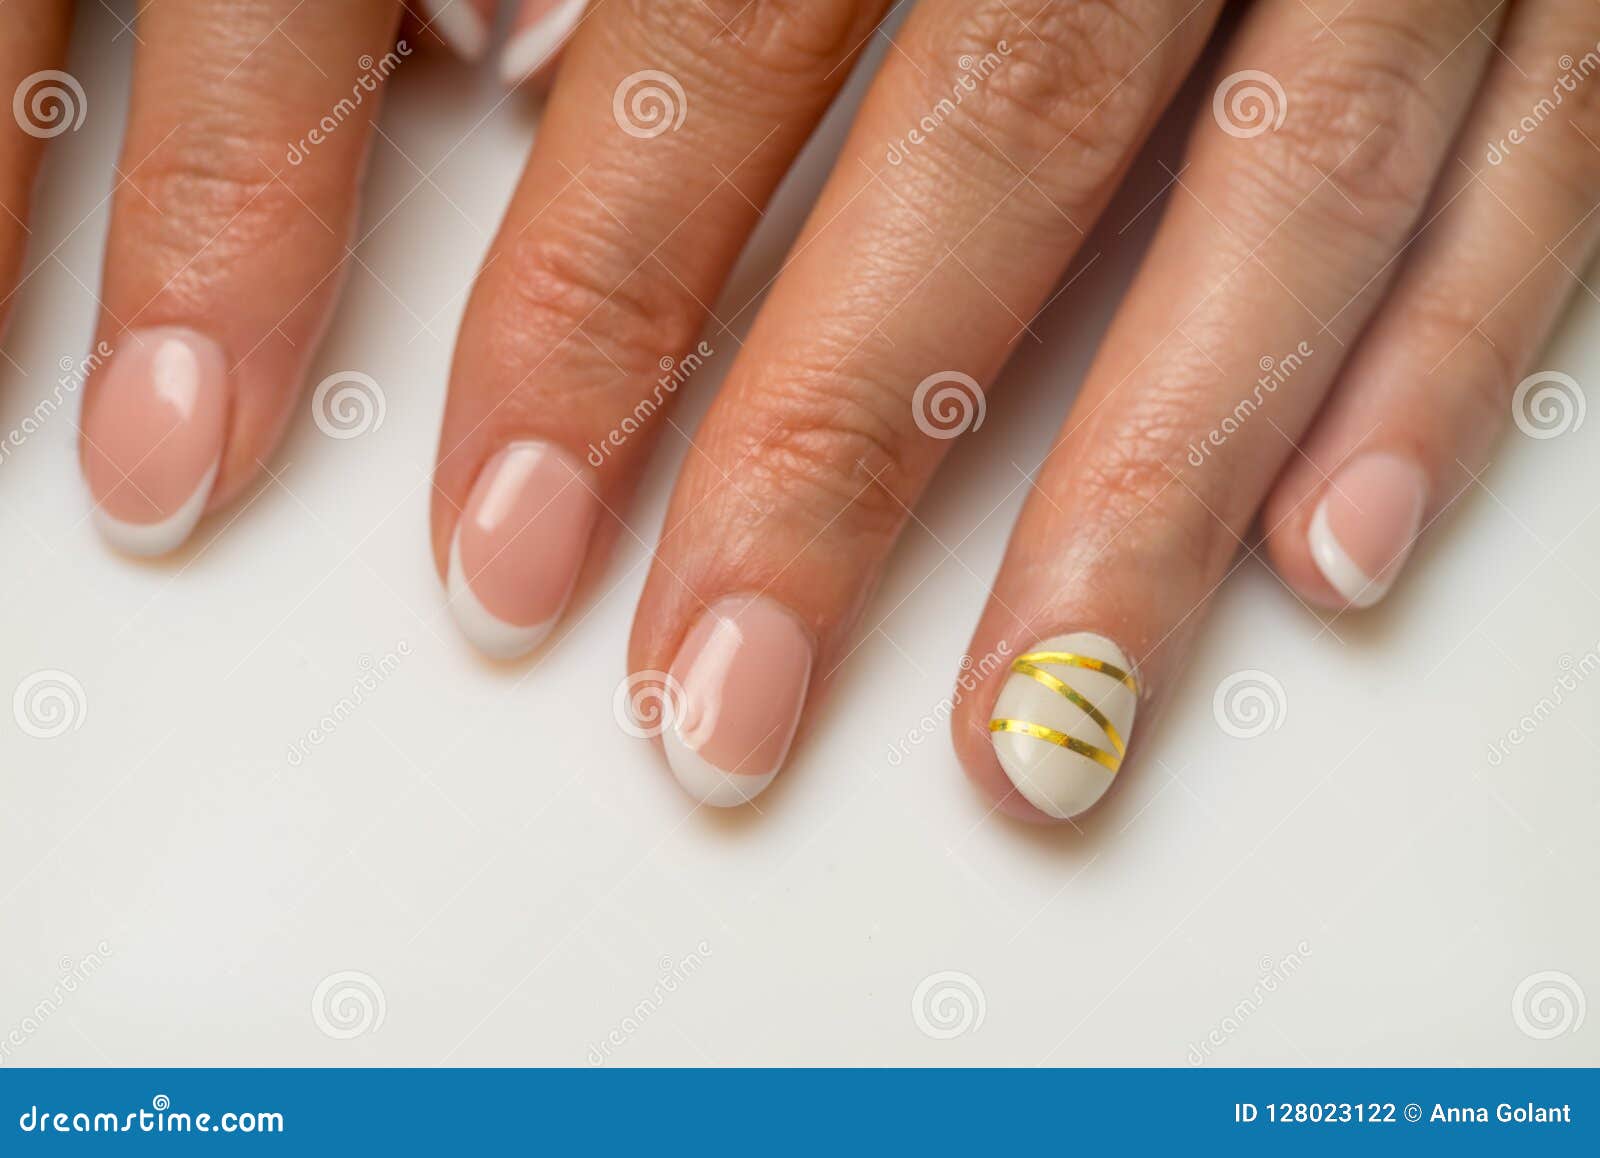 Nails Art In Gel Uv Tutorial Semplici E Carine Youtube